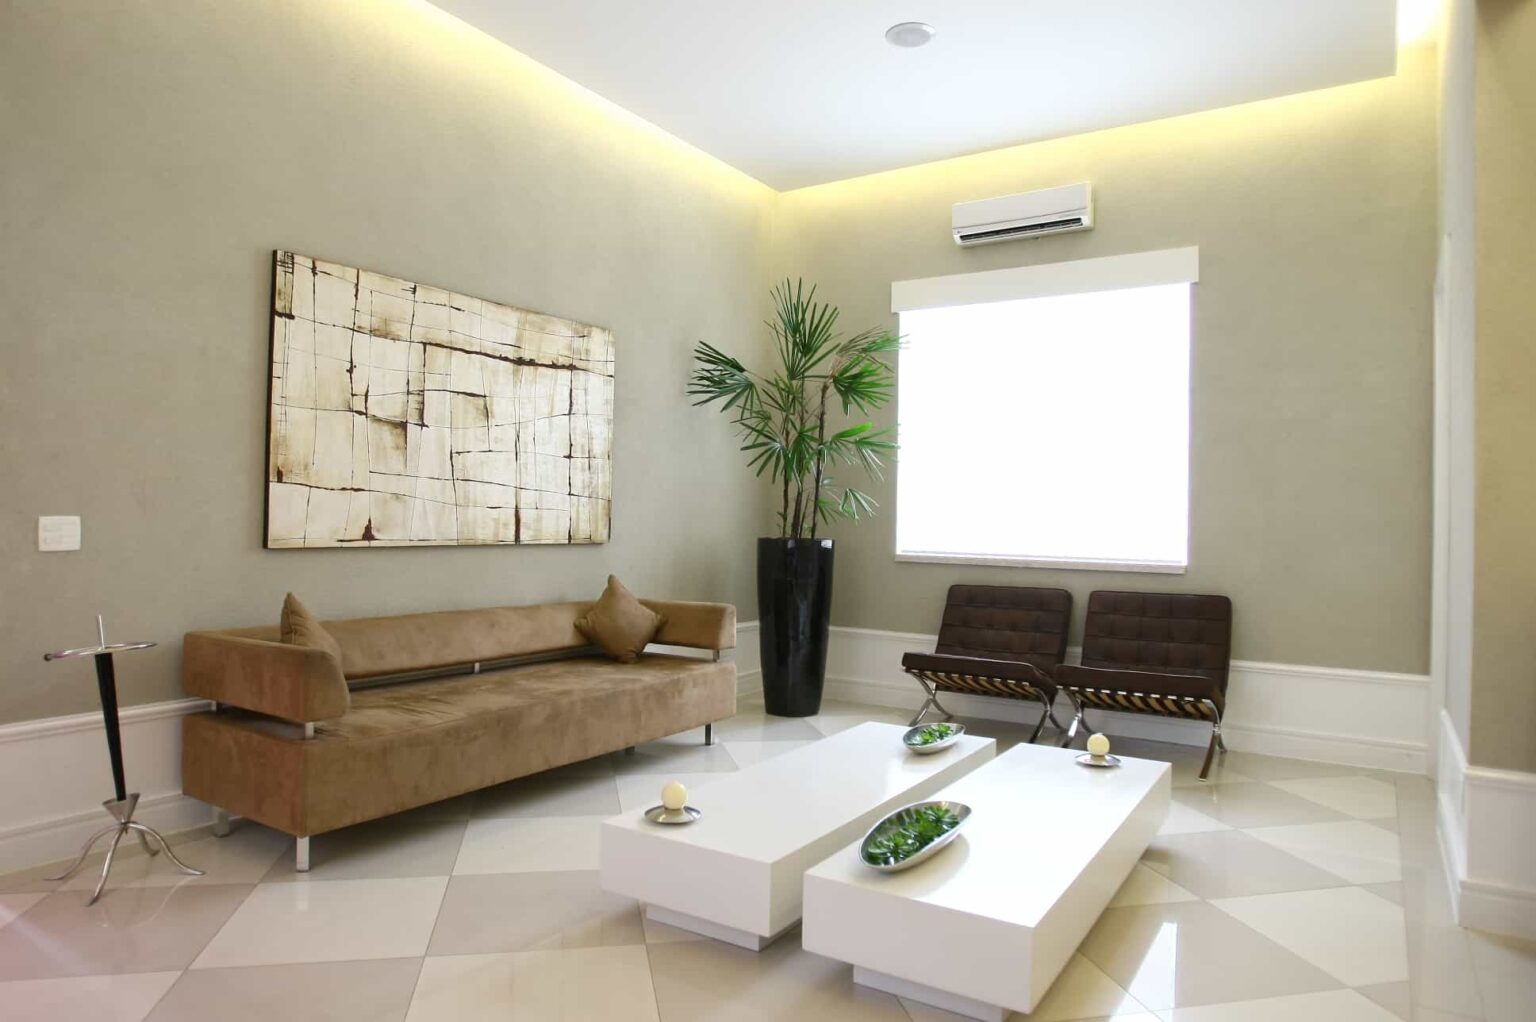 Ambiente climatizado de sala de espera, com sofá e assentos aconchegantes